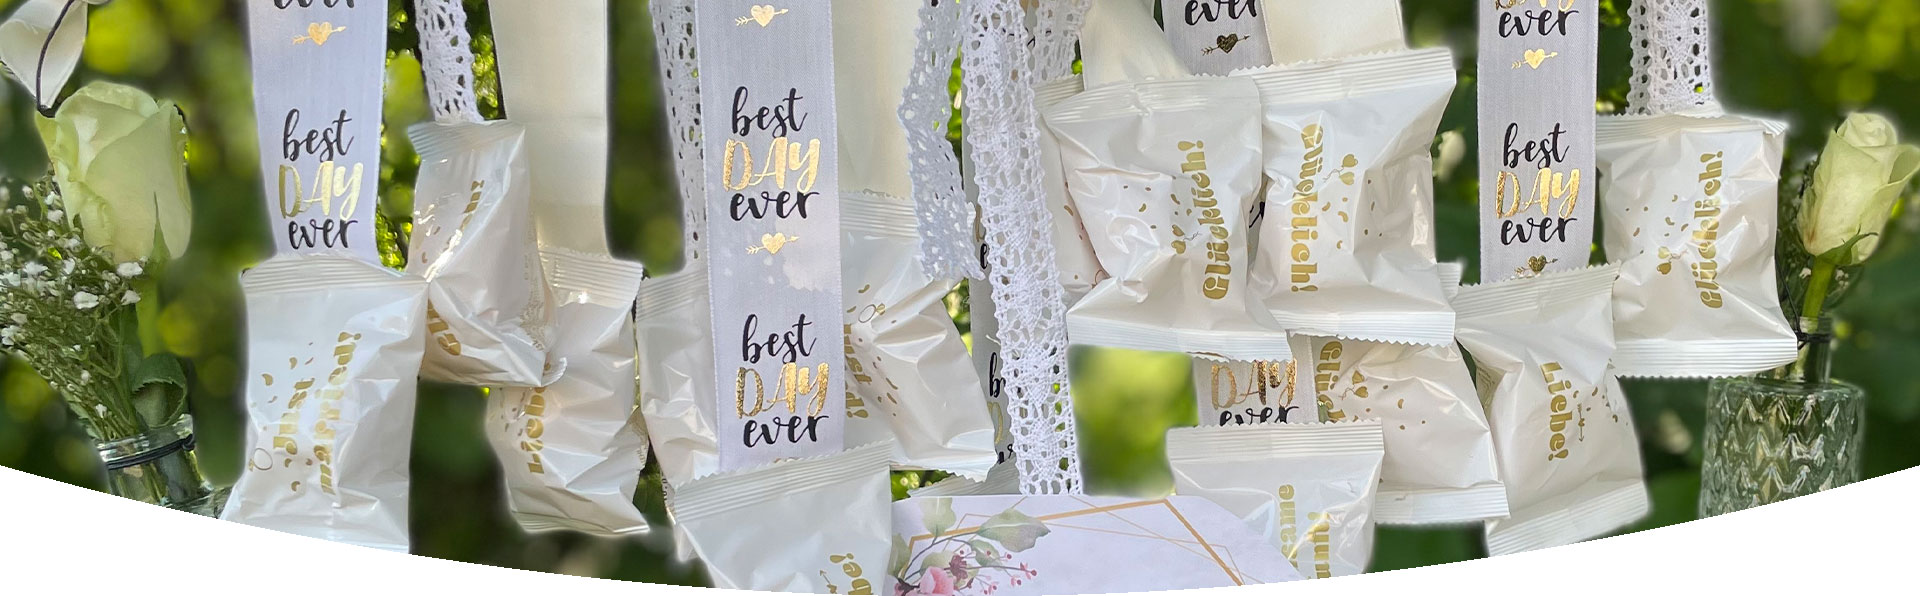 Zum mitnehmen - Glückskekse mit Bändern an einer Birkenstange zur Hochzeit